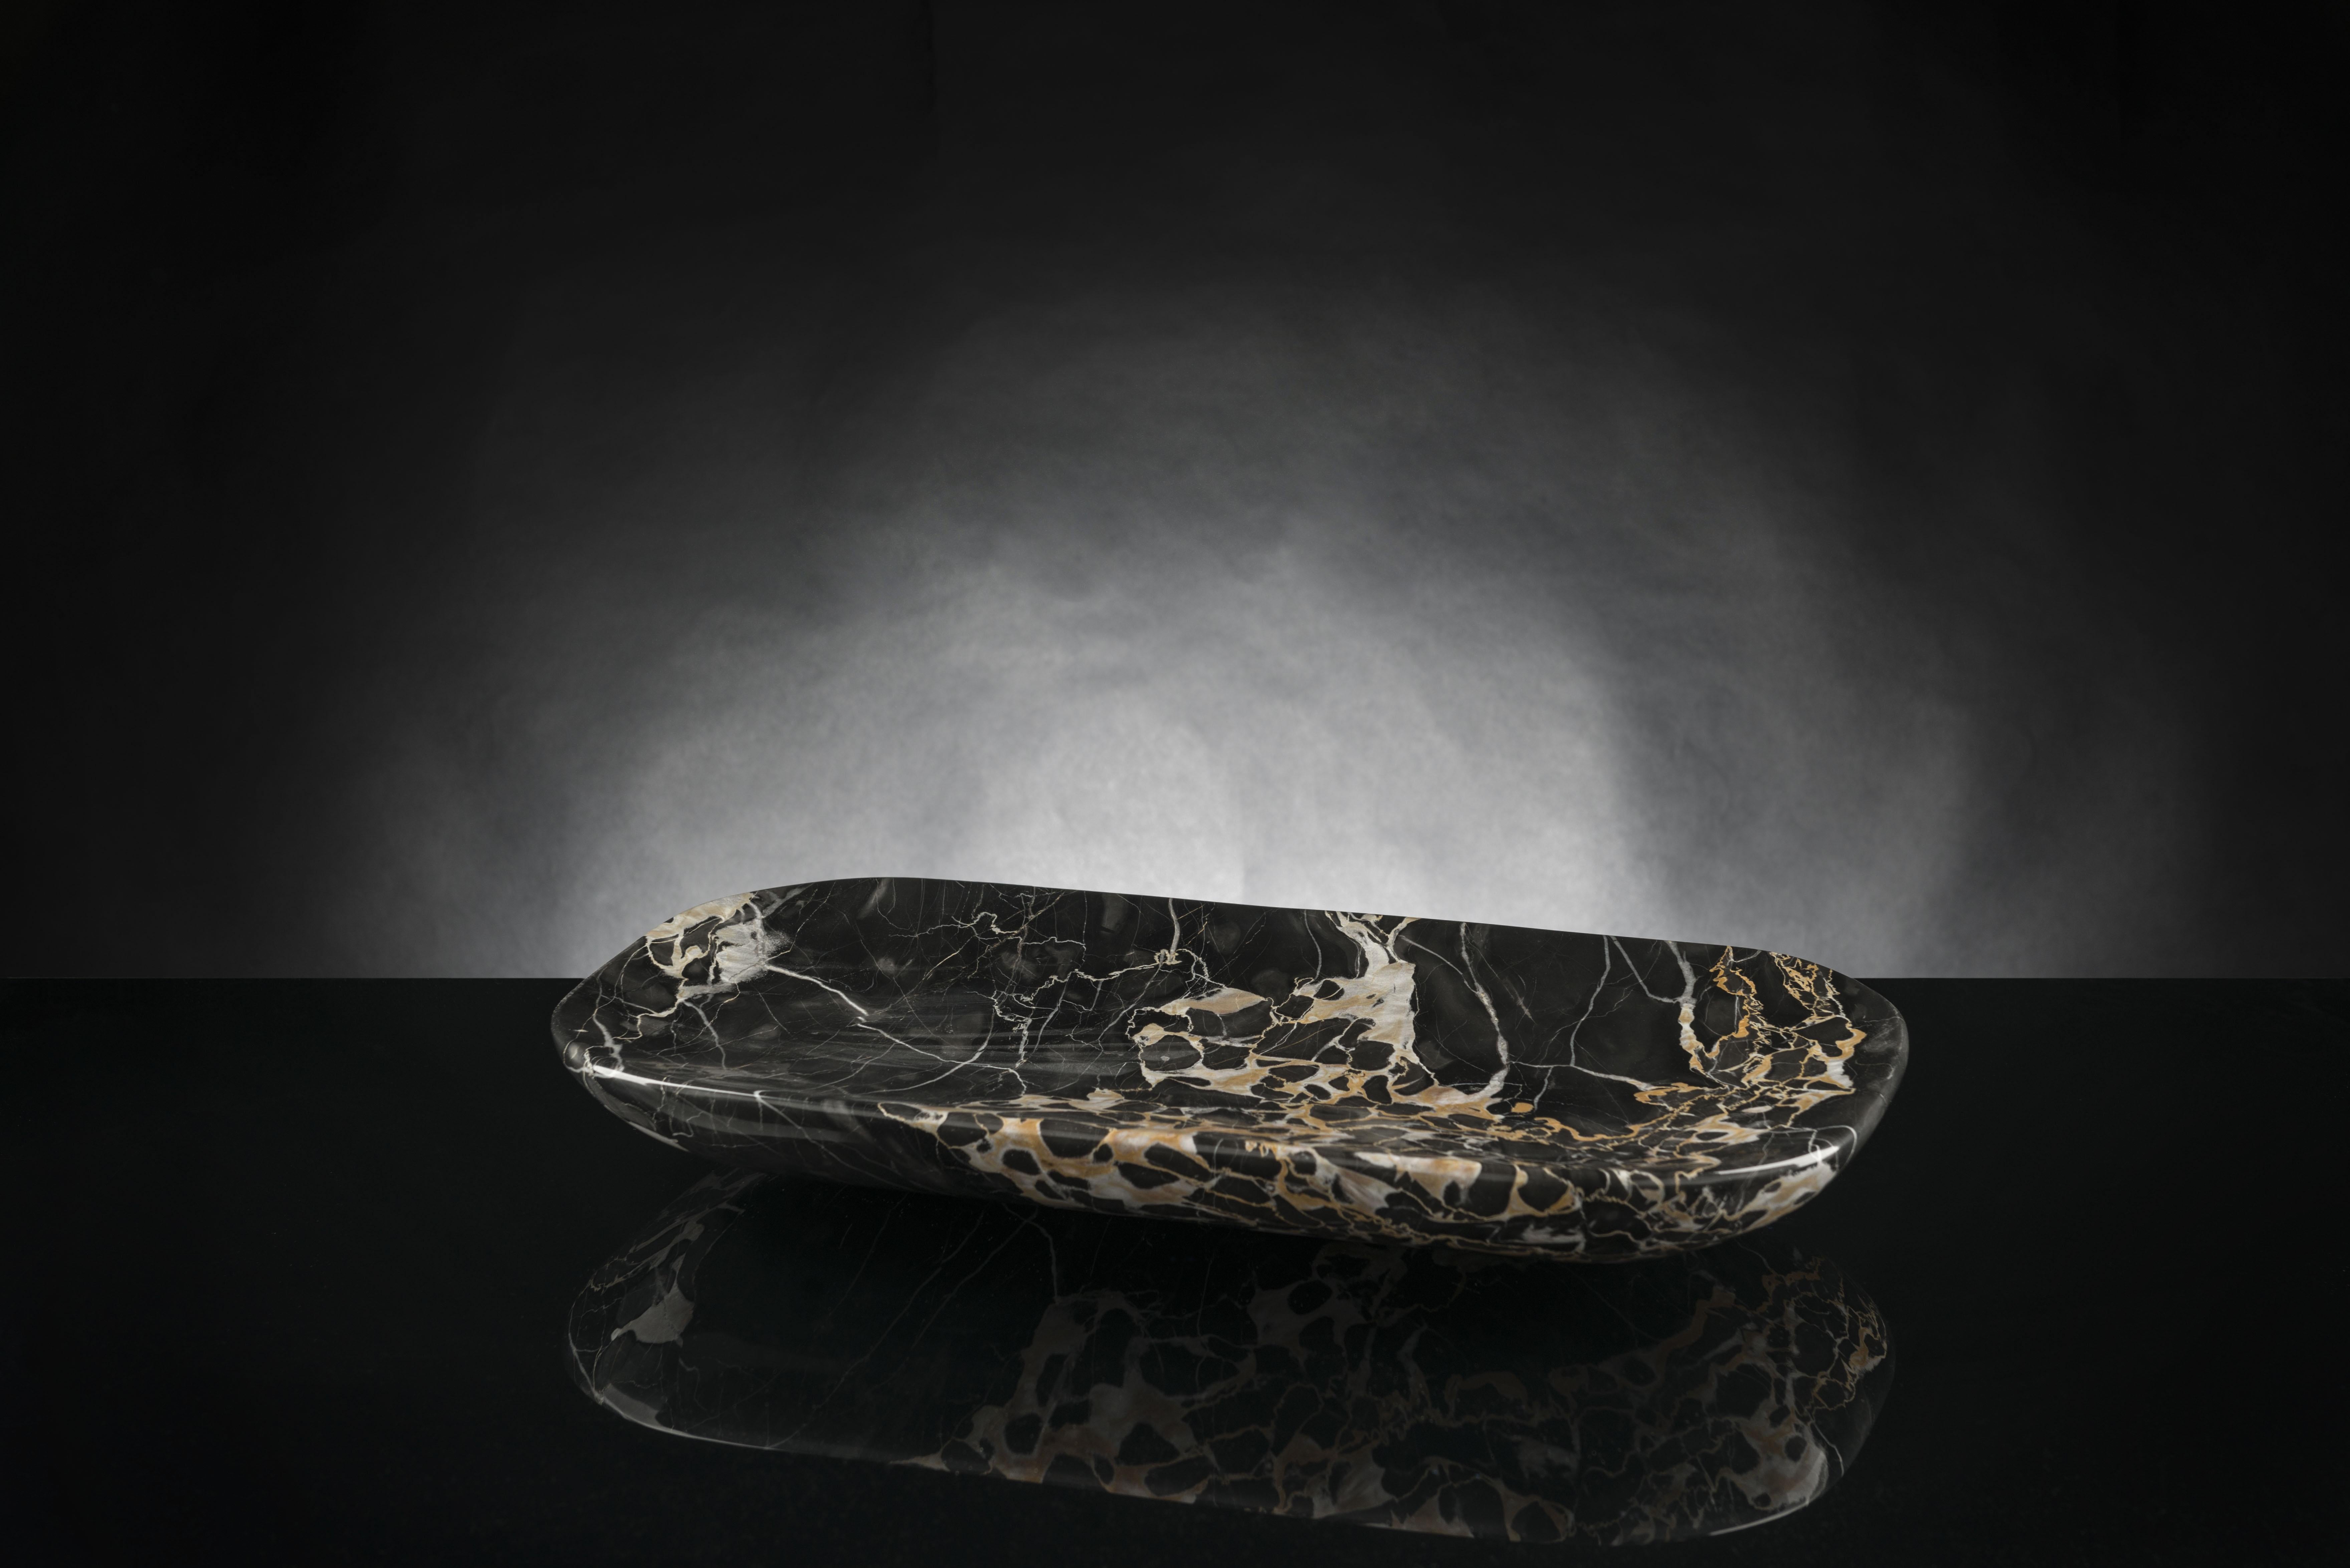 Modernes Marmortablett aus Portoro oder Portovenere-Marmor, einer wertvollen schwarzen Marmorsorte aus Ligurien (Norditalien), hergestellt durch die Bearbeitung von Natursteinen mit 5-Achsen-Pantographen, die es ermöglichen, komplexere Formen als